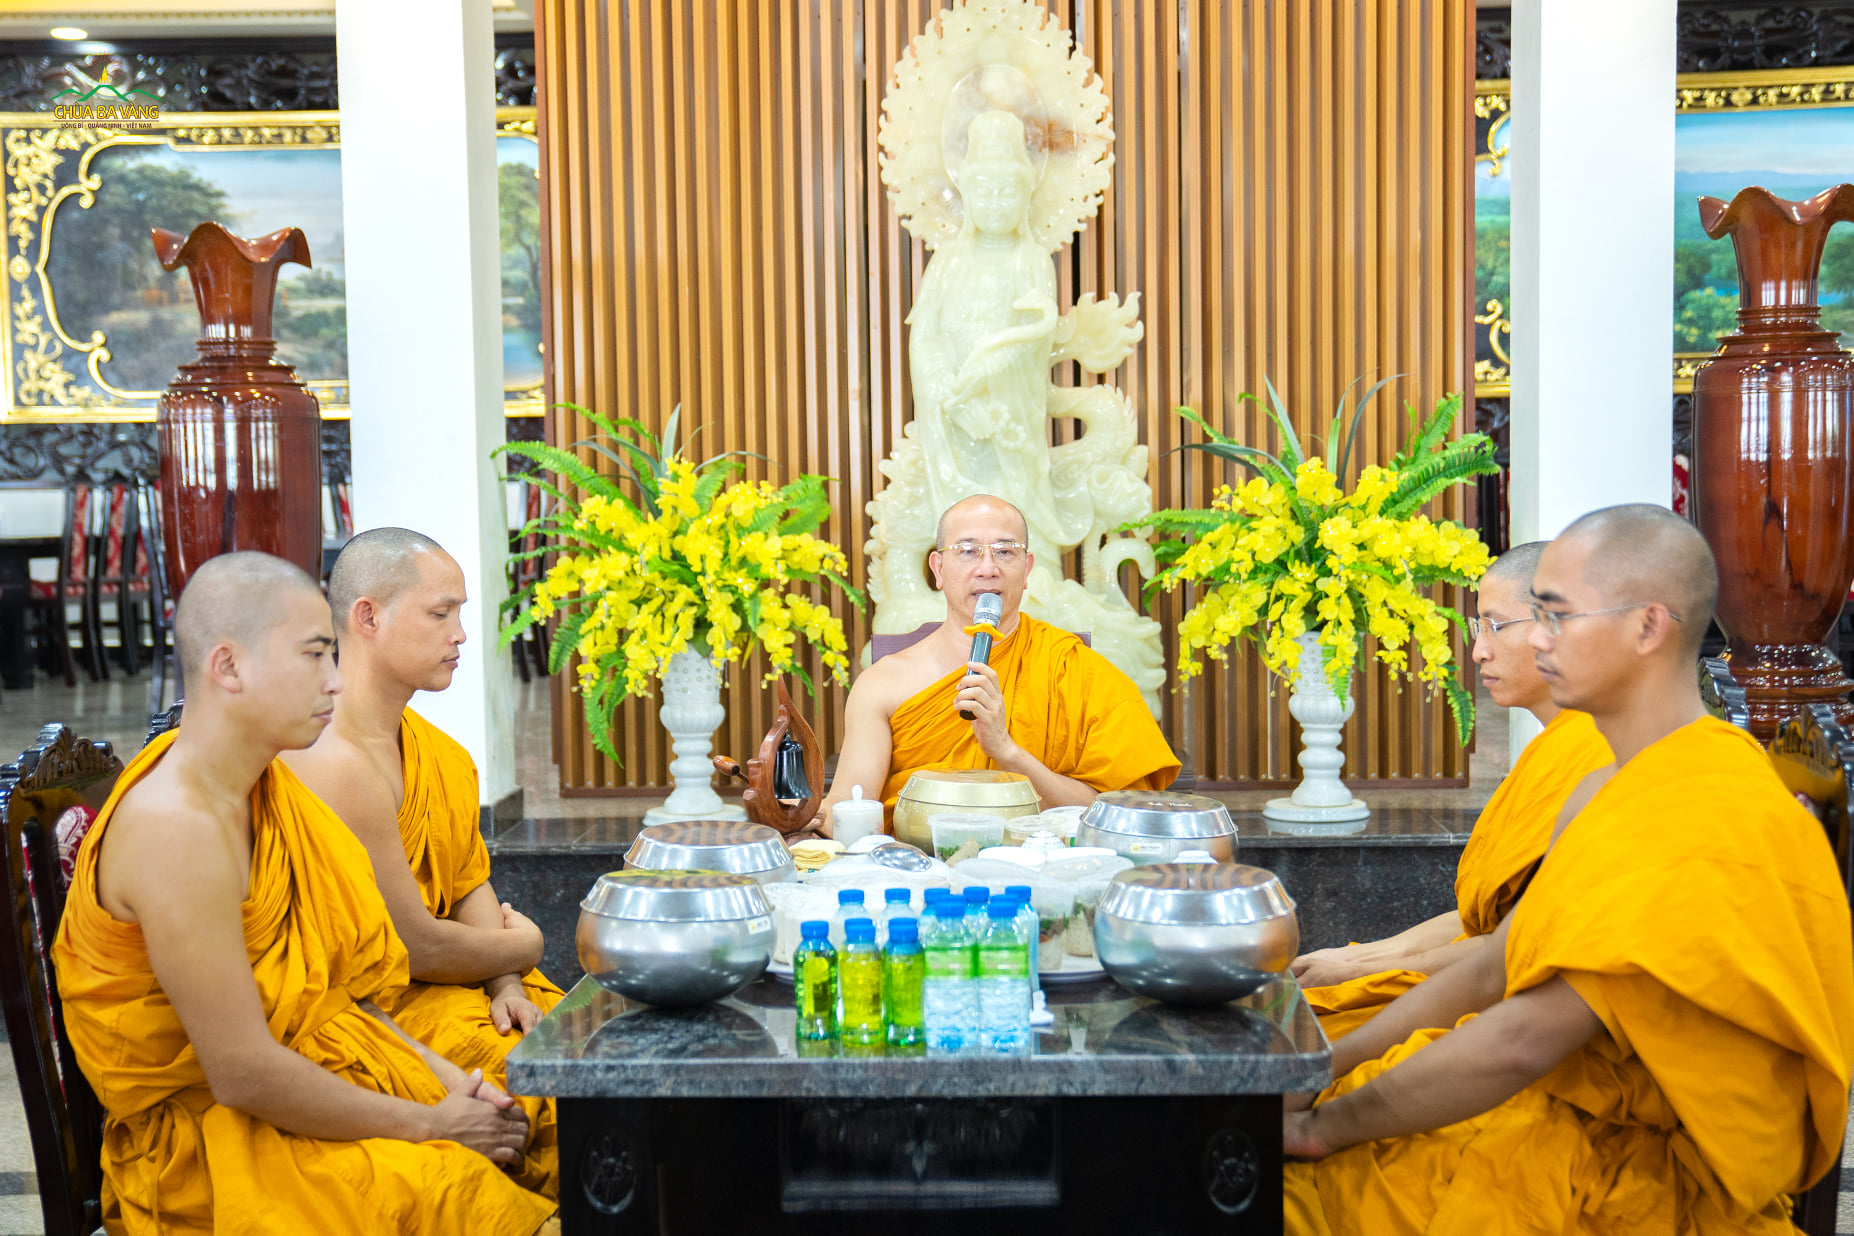 Đón nhận tấm lòng của các Phật tử, Sư Phụ đã ban những lời đạo từ đầy ý nghĩa, chỉ dạy các Phật tử luôn thực hành hiếu tâm